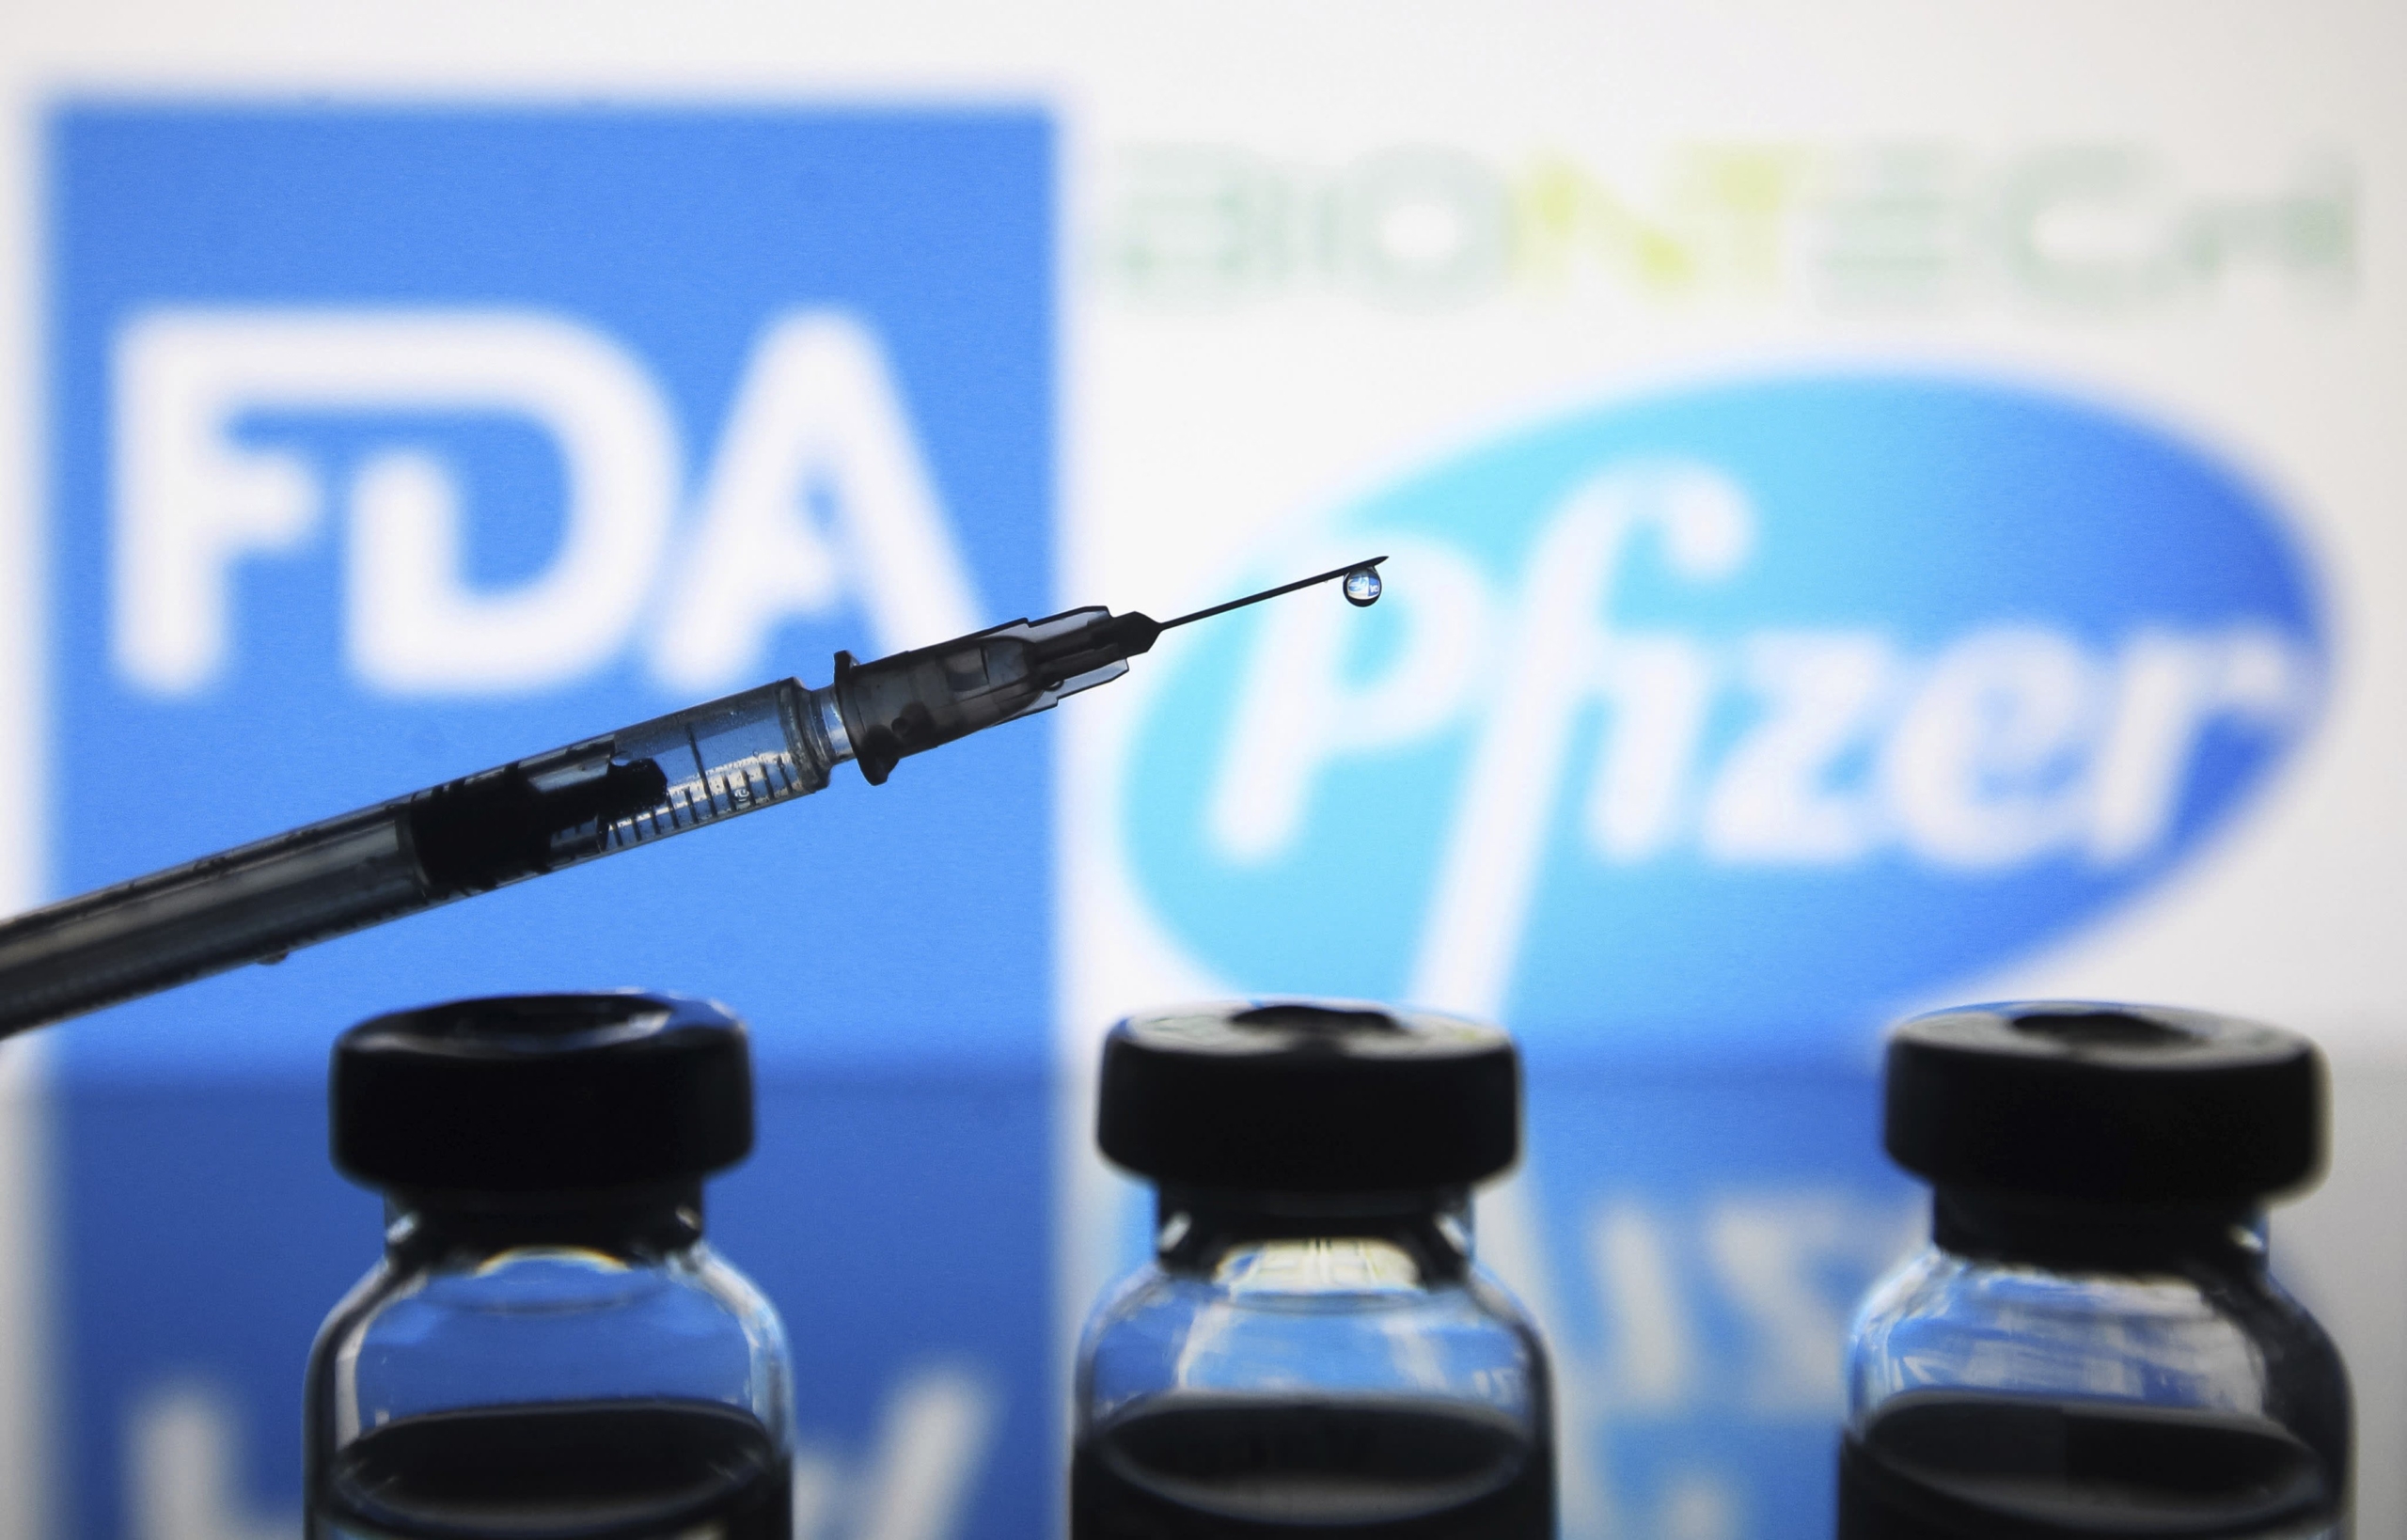 Zaslišanje Pfizerja spodbudilo strahove glede cepiv